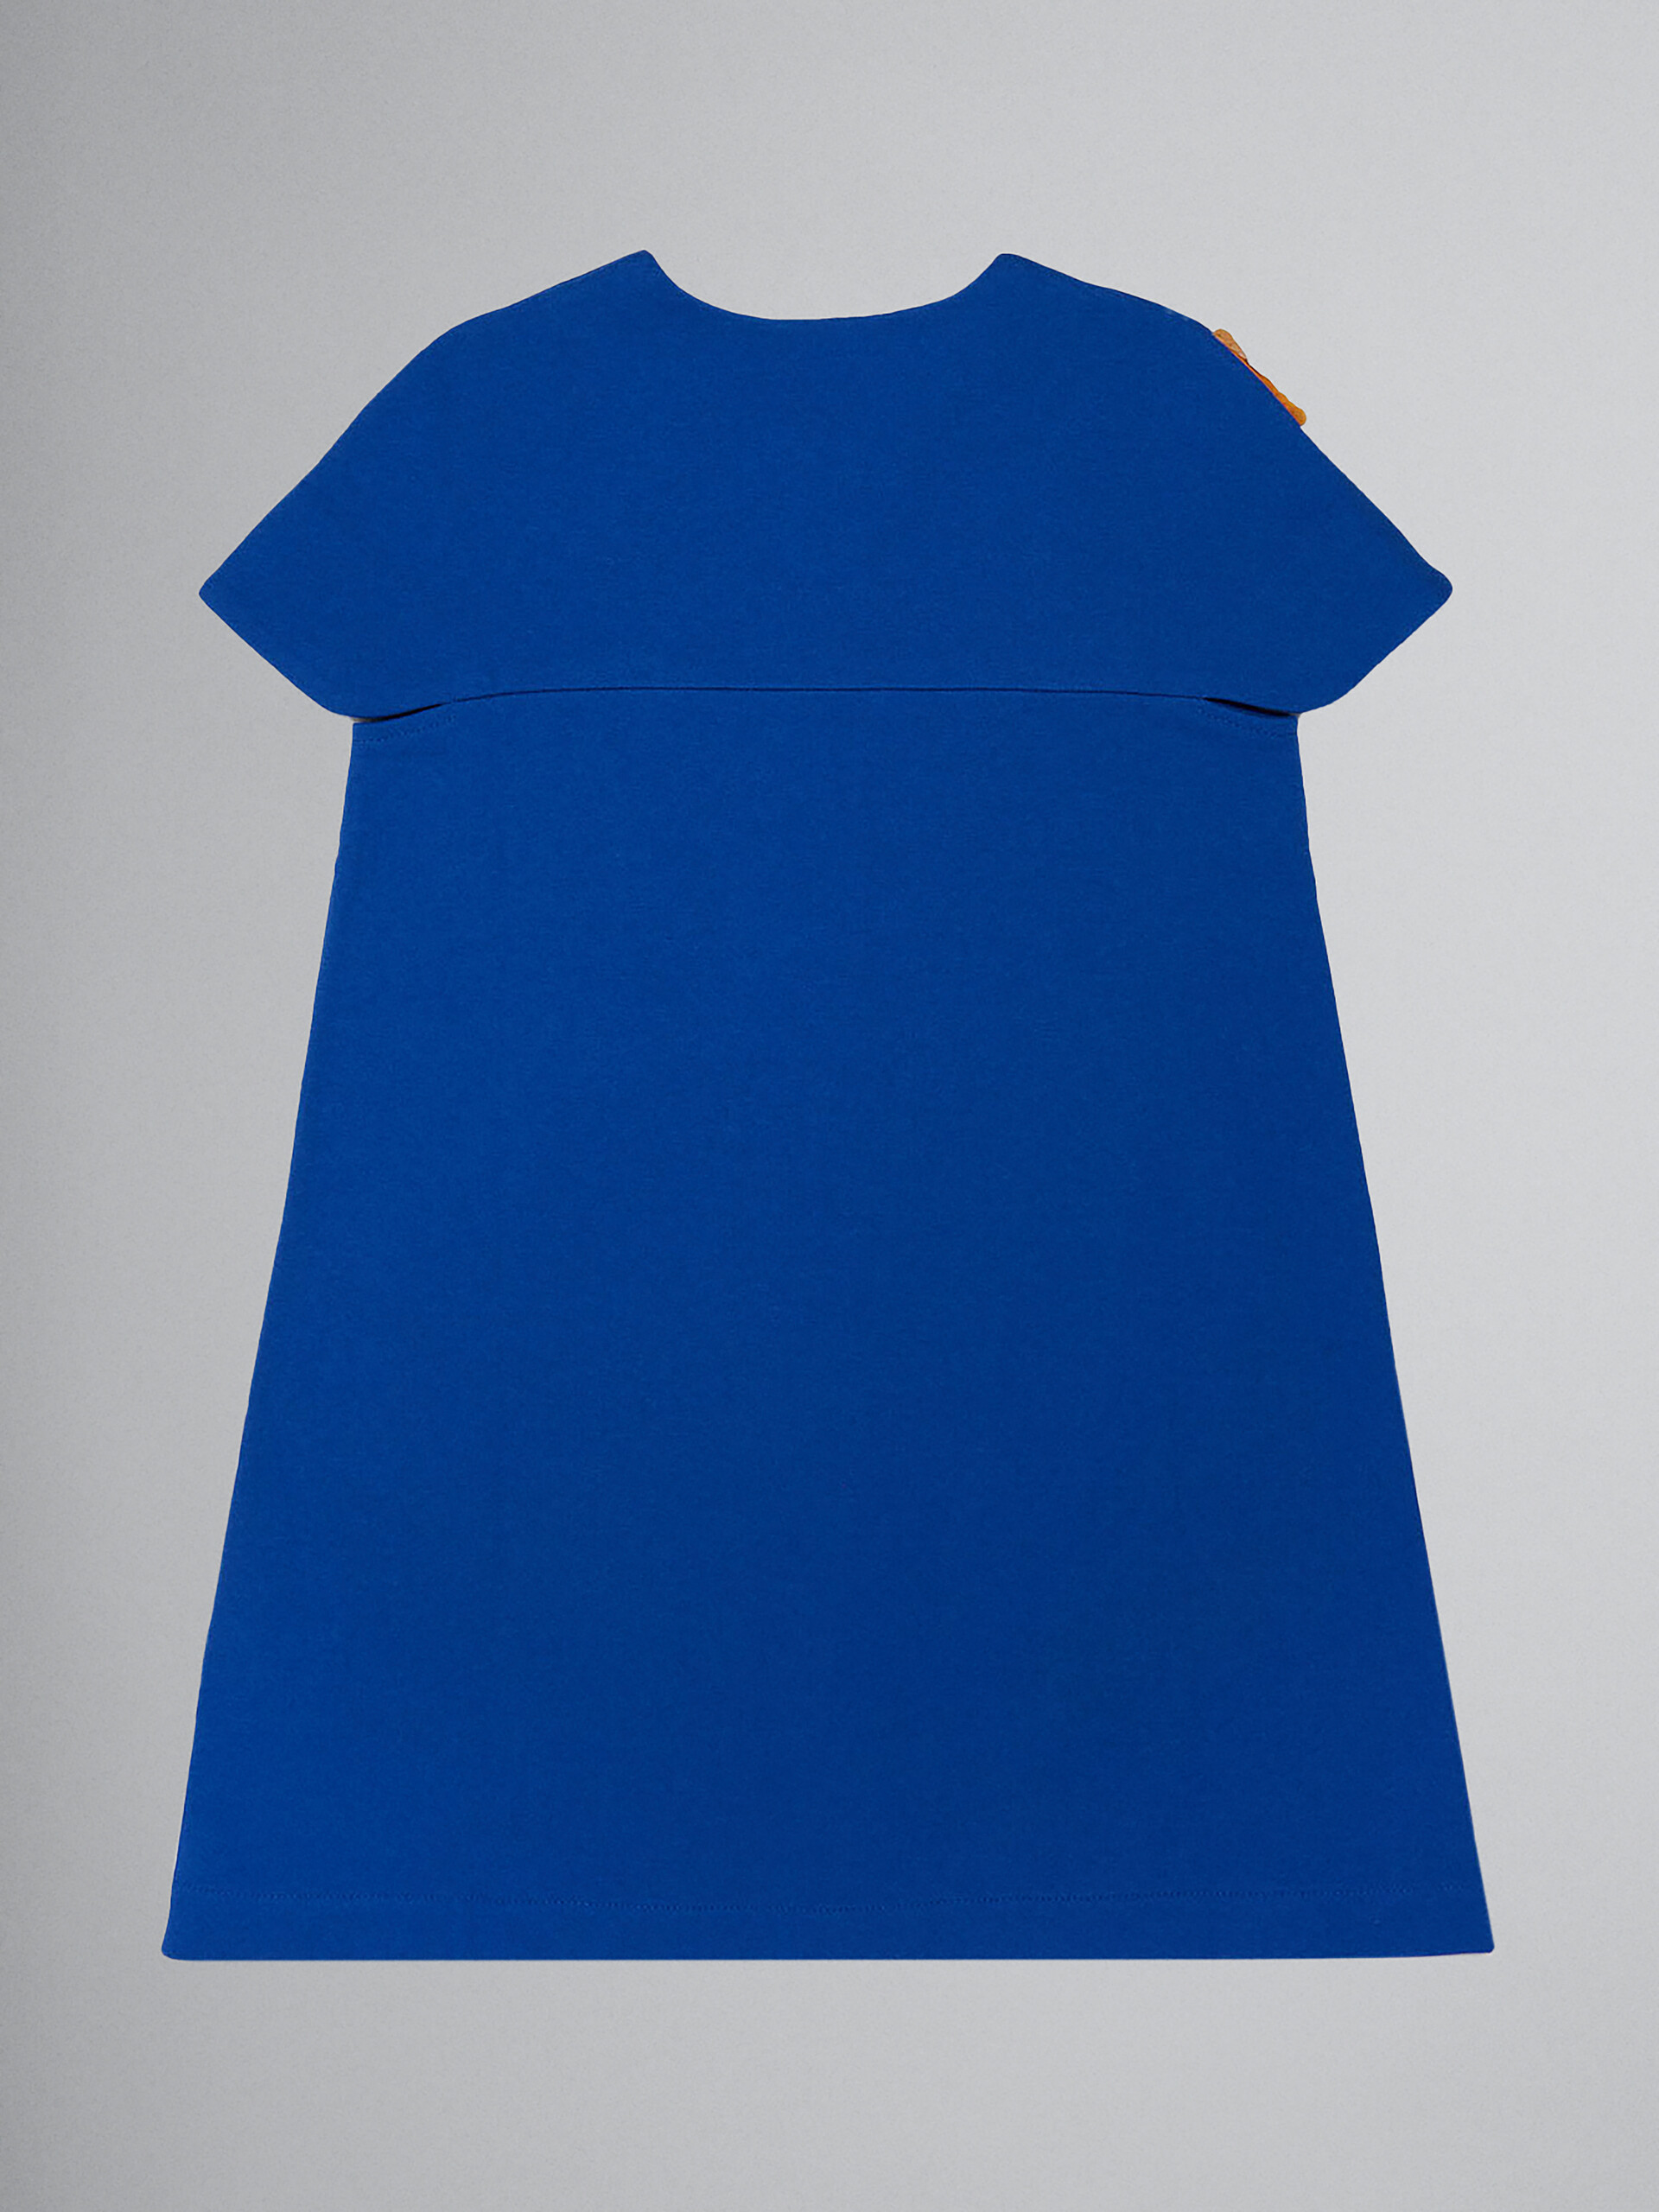 ブルー フリースドレス Daisyプリントとスパンコール装飾 - ドレス - Image 2